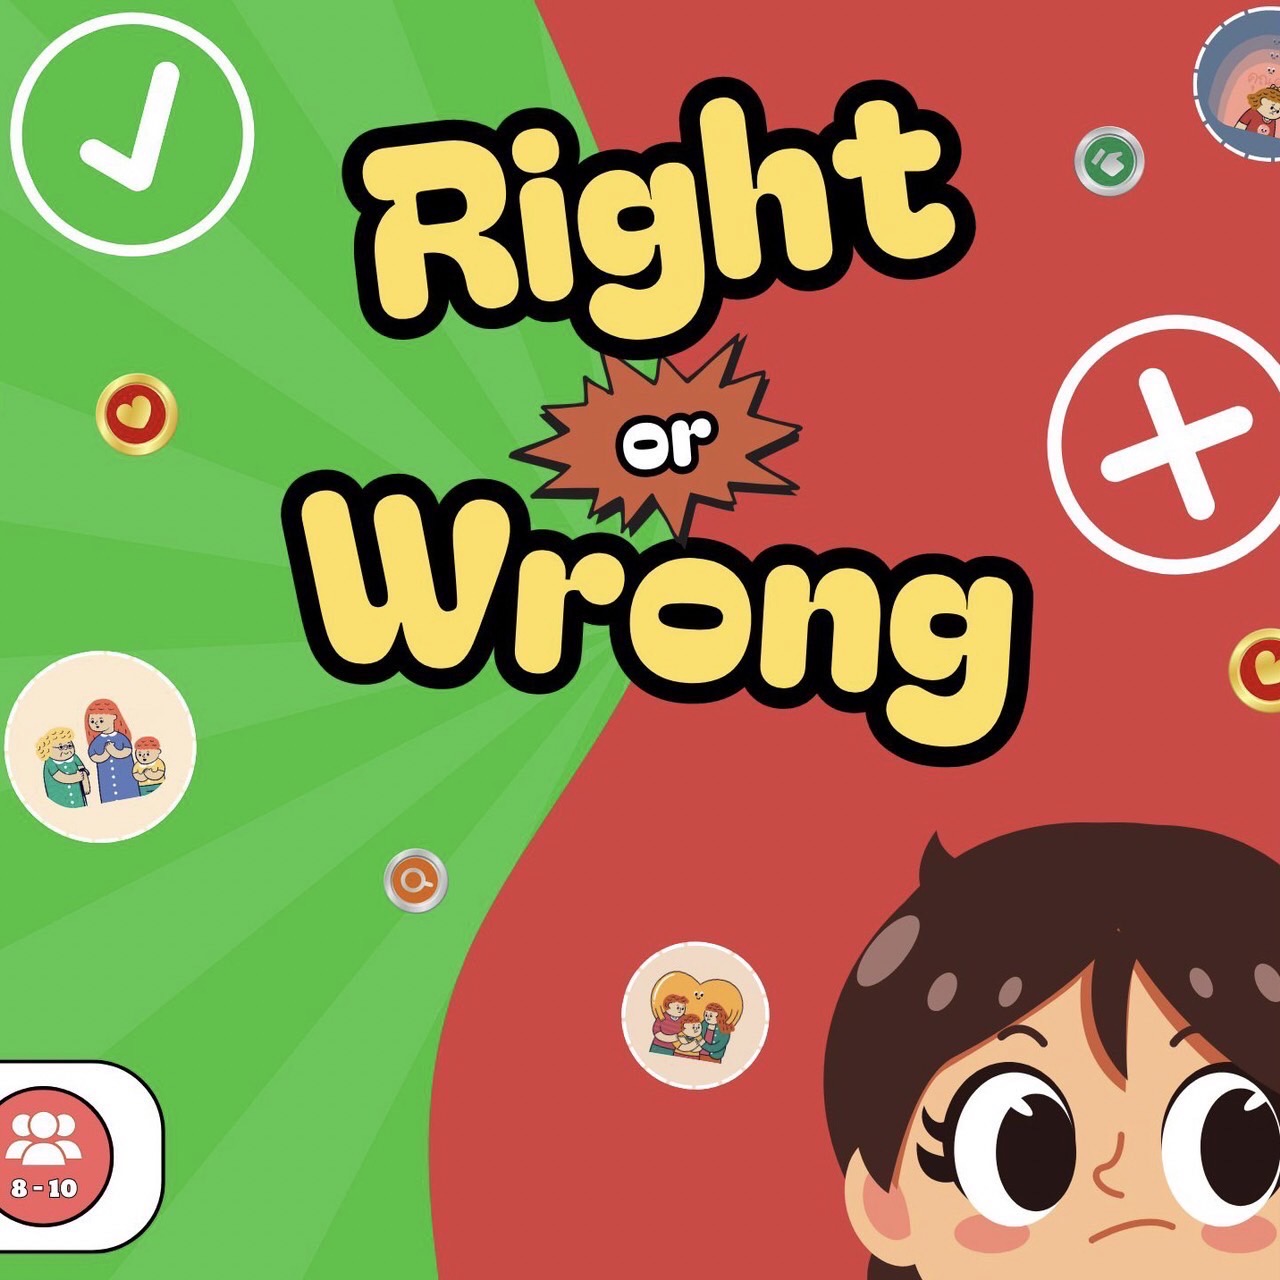 ภาพประกอบไอเดีย Right or Wrong เกมกระดานส่งเสริมในการแยกแยะสิ่งที่ถูกและผิด